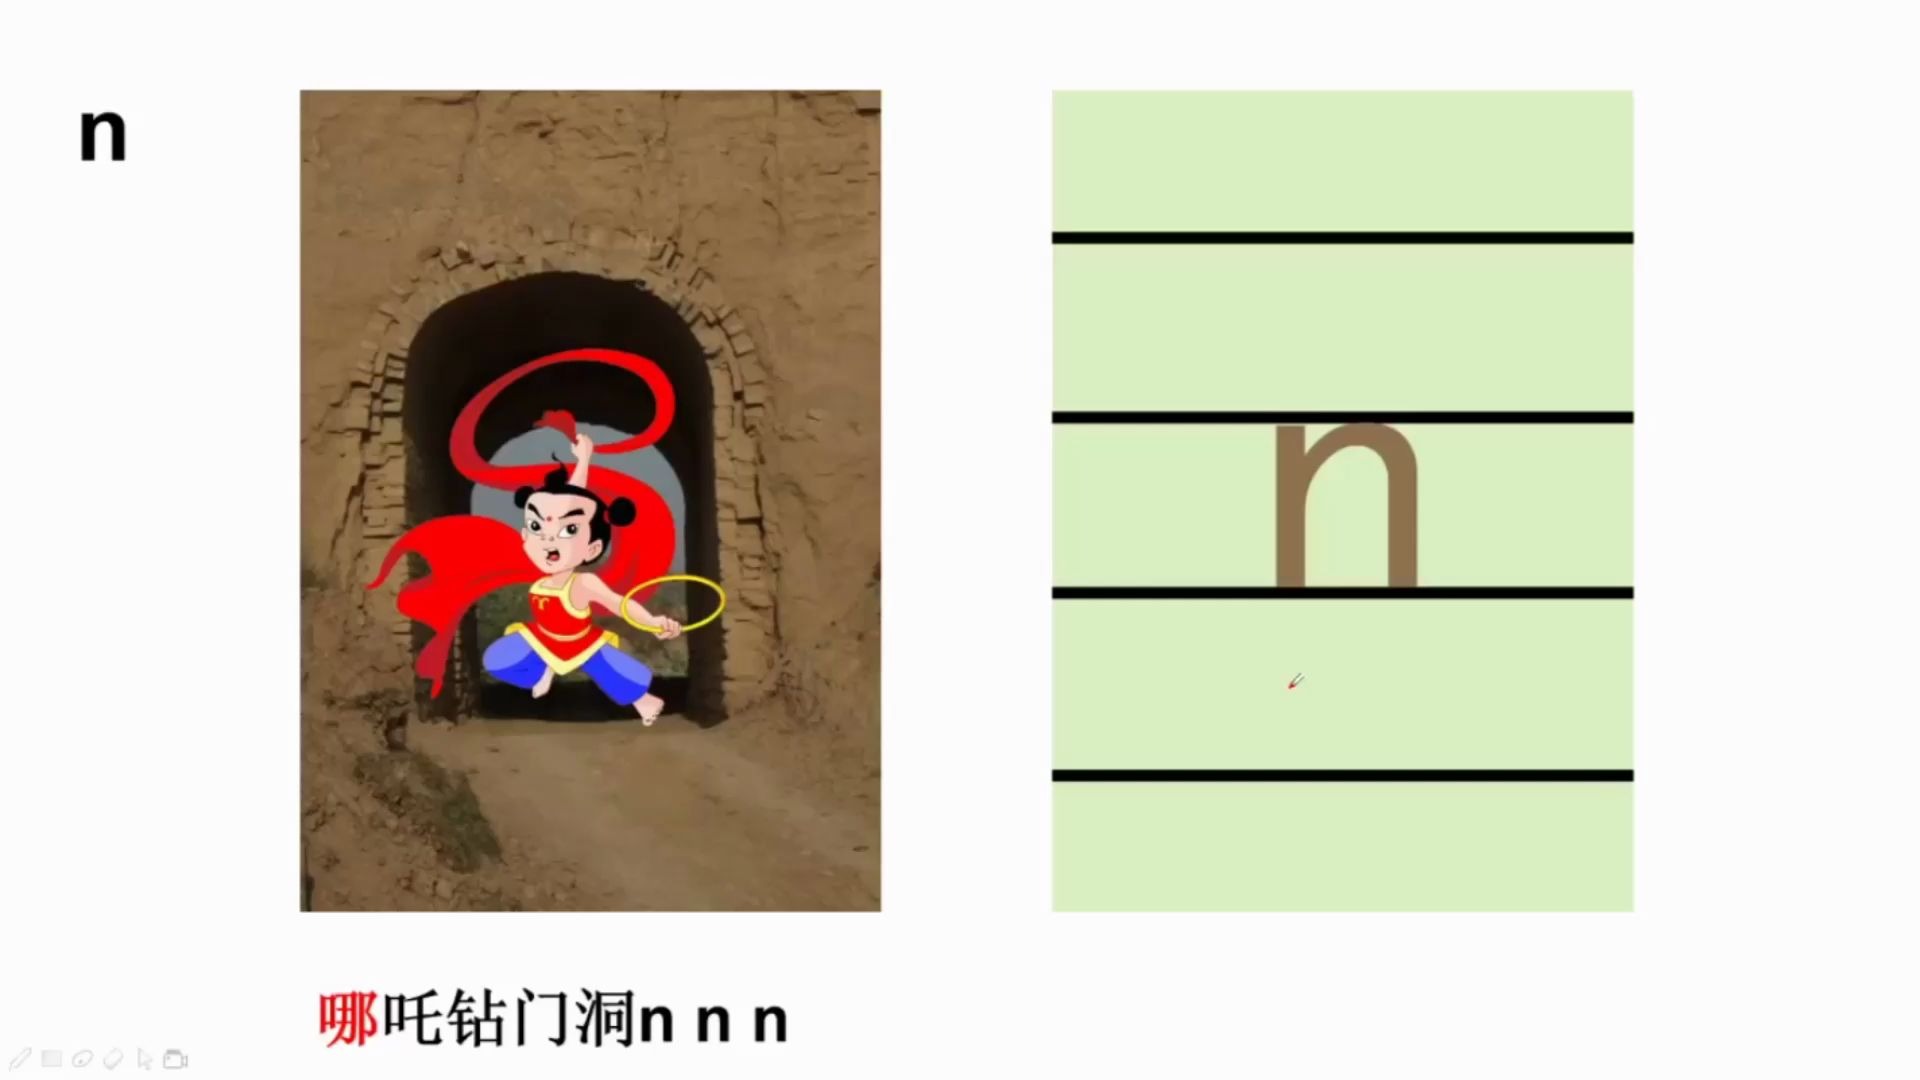 活动作品轻松学汉字如何高效学拼音16n象形记忆法